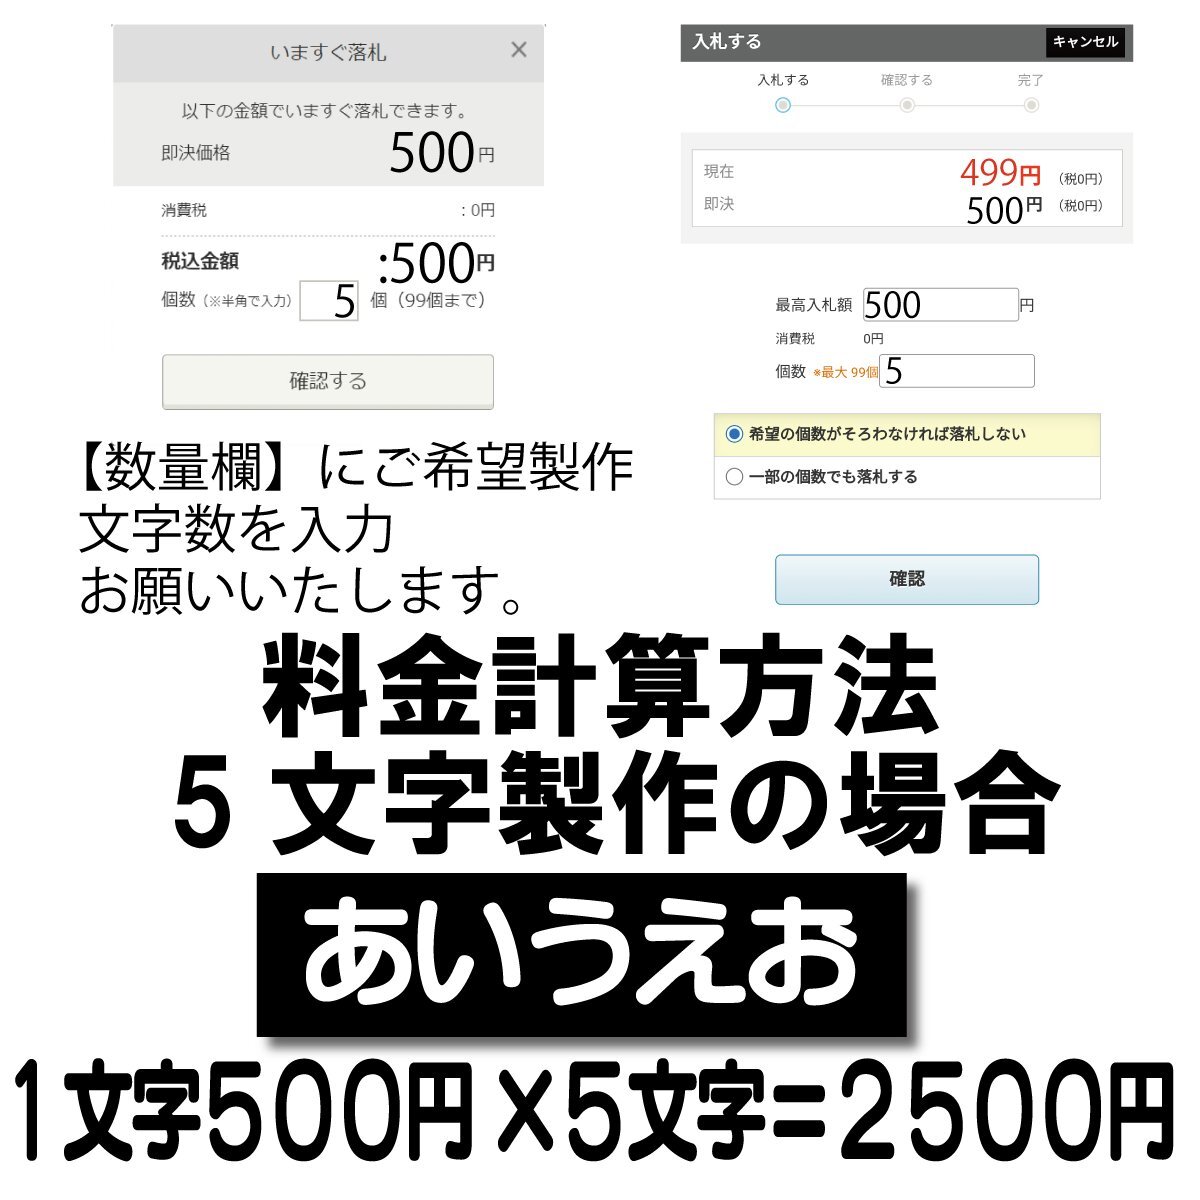 Если вы выиграете ставку с 5 символами, это будет 2500 иен.